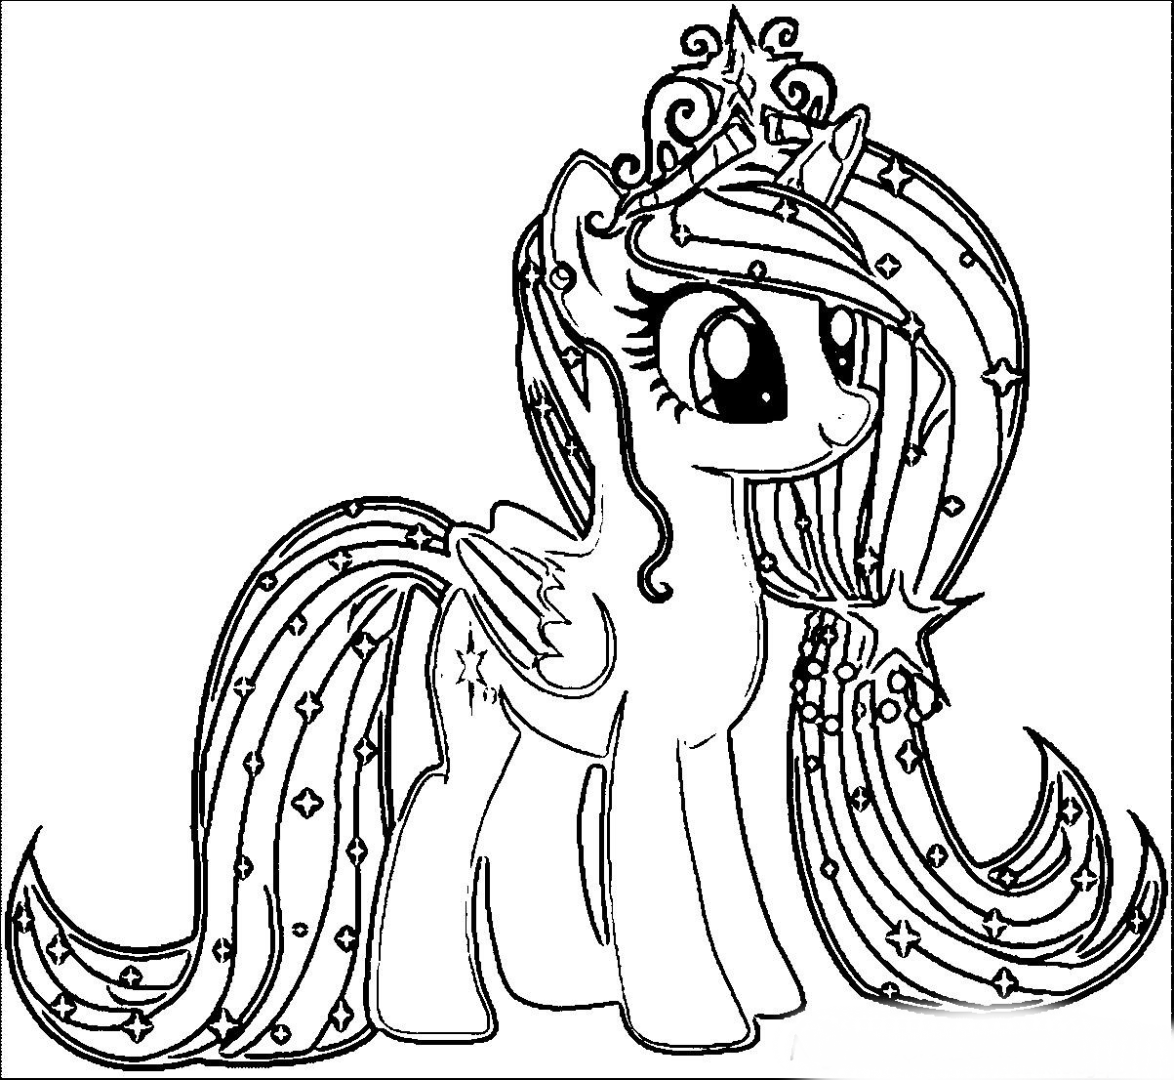 My little Pony раскраска. Раскраска понивиль принцессы. My little Pony принцессы раскраска. Раскраска пони Рарити принцесса. Pony color